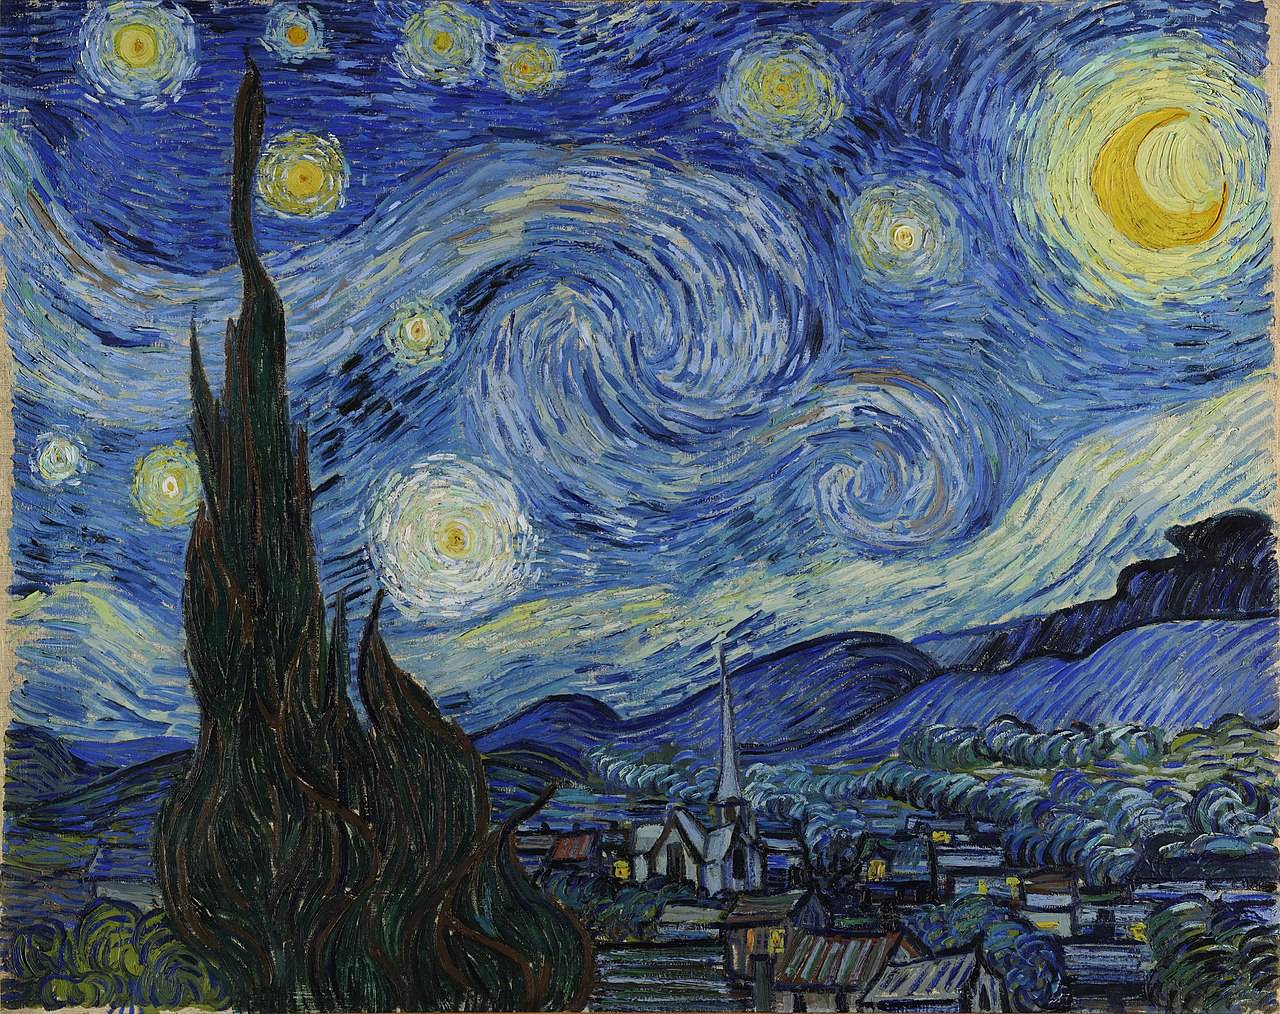 Винсент Ван Гог. Звёздная ночь. 1889